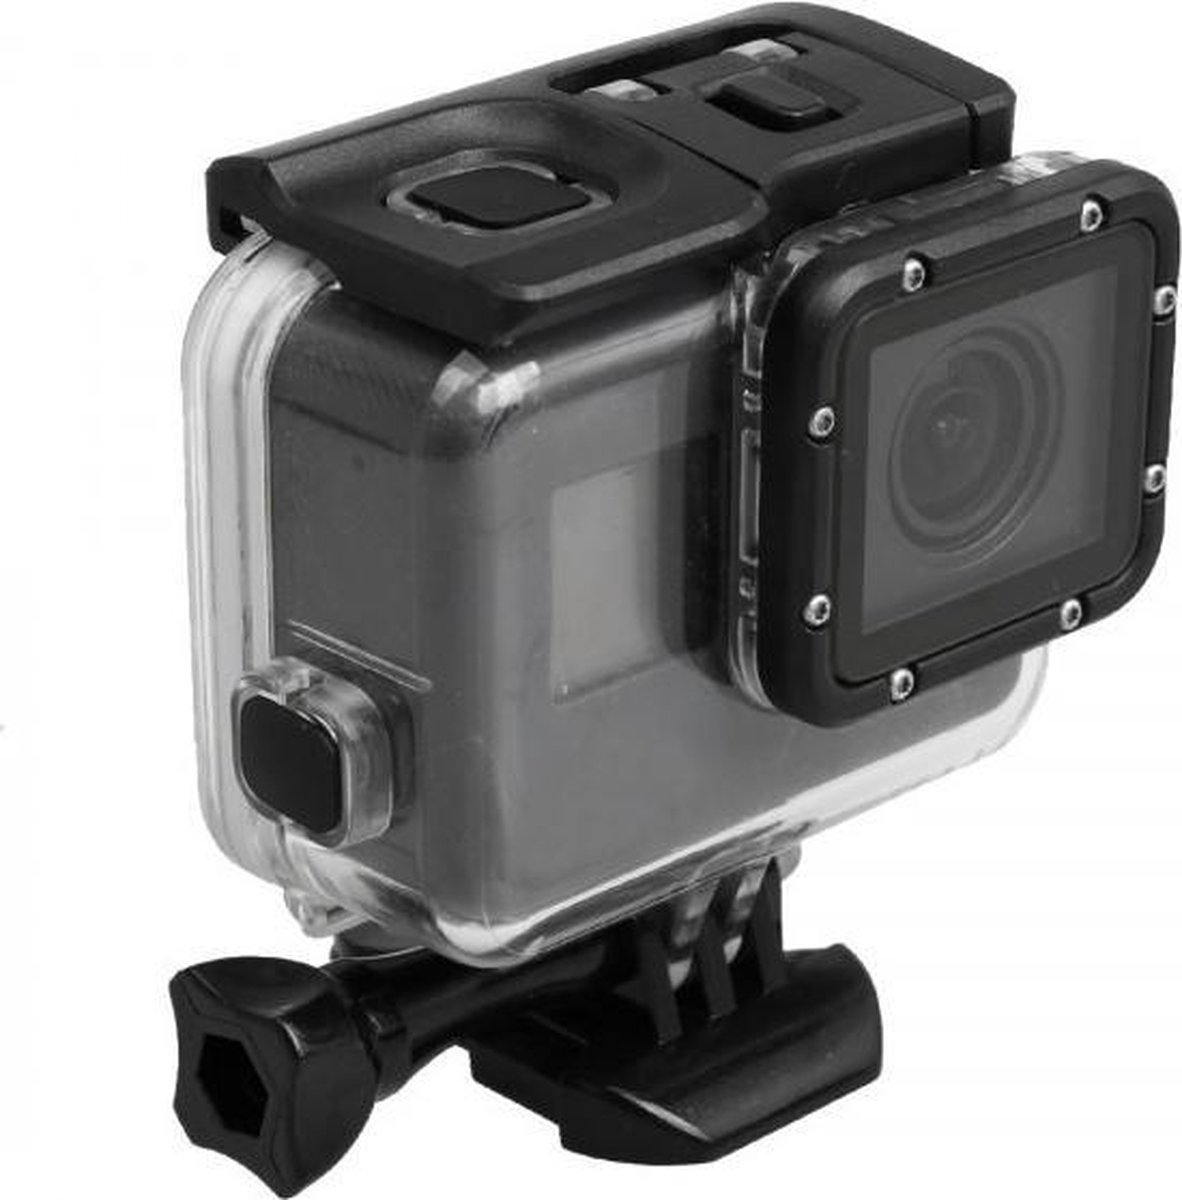 Waterdichte behuizing voor GoPro Hero 5 en 6 - Waterproof case for GoPro Hero 5 and 6 - ActieCamera.eu